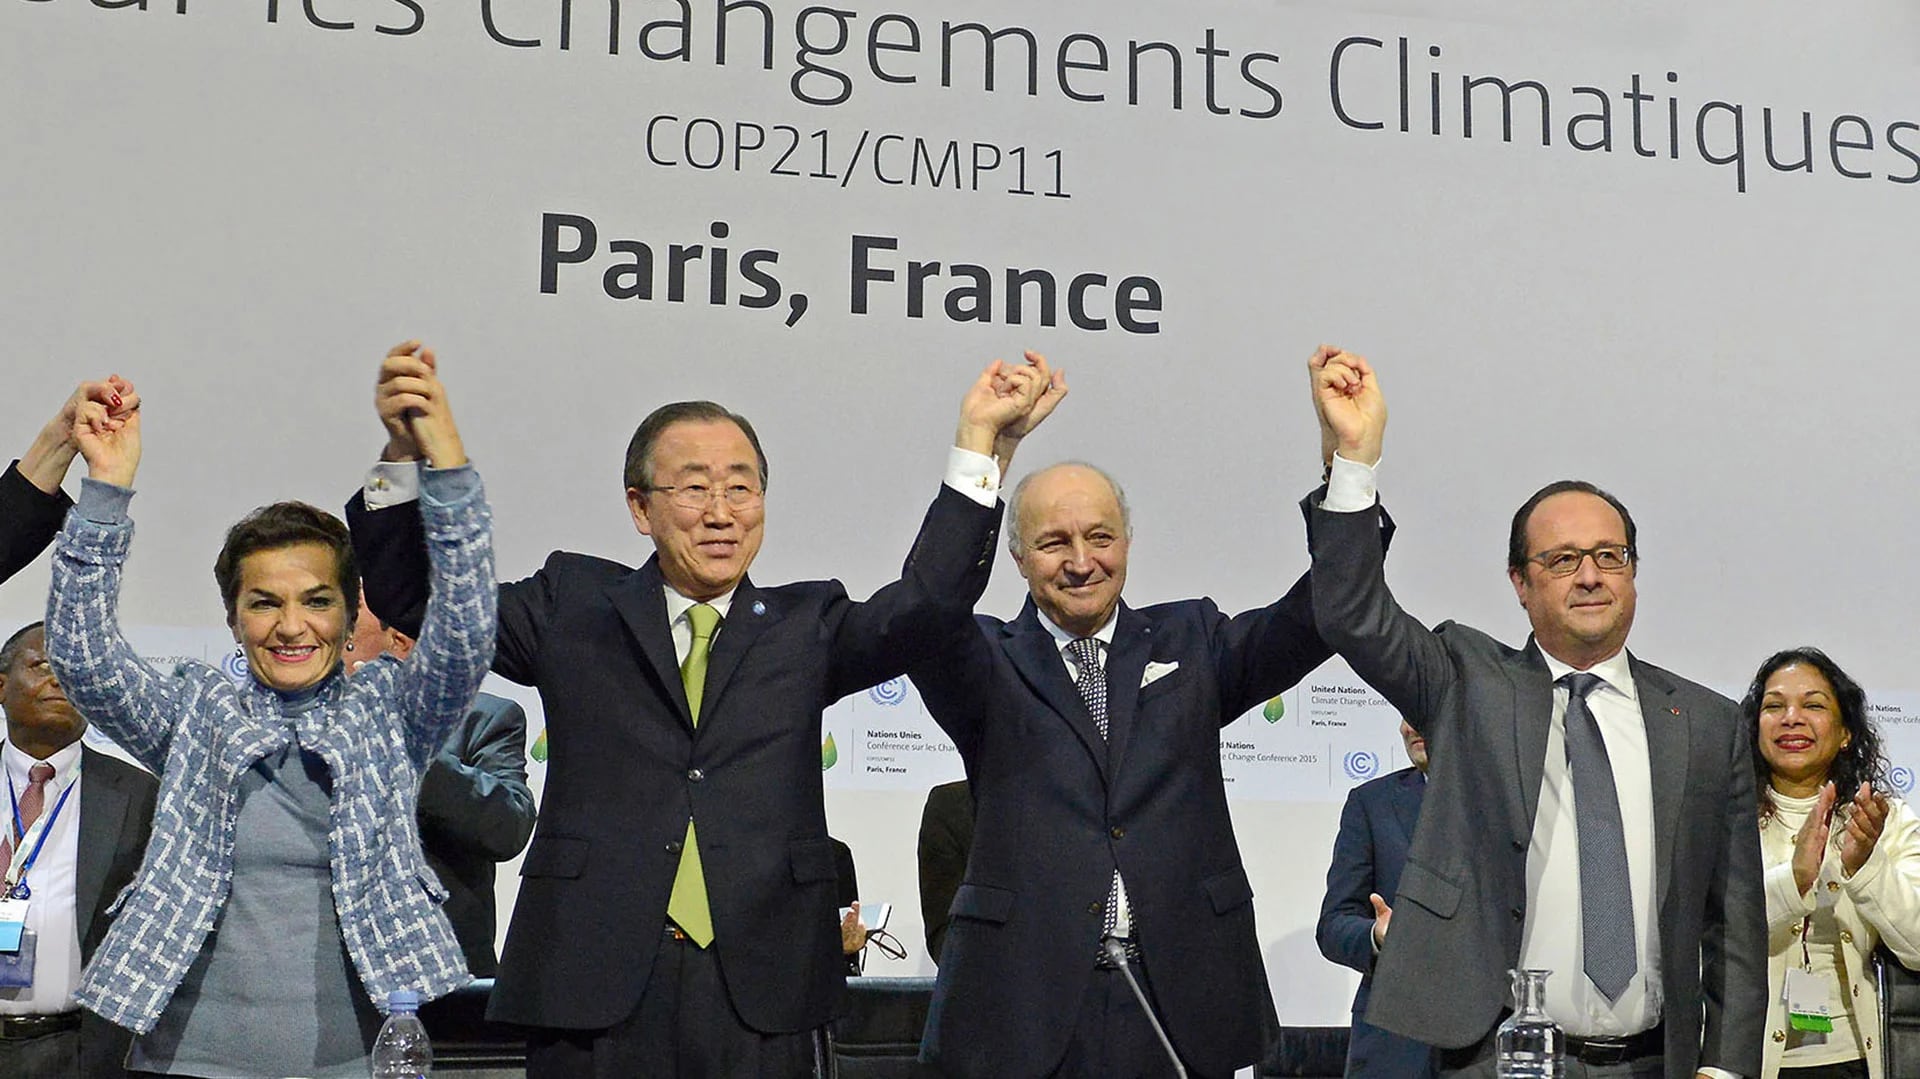 En diciembre de 2015, 195 países firmaron un tratado de compromiso ambiental conocido como Acuerdo de París